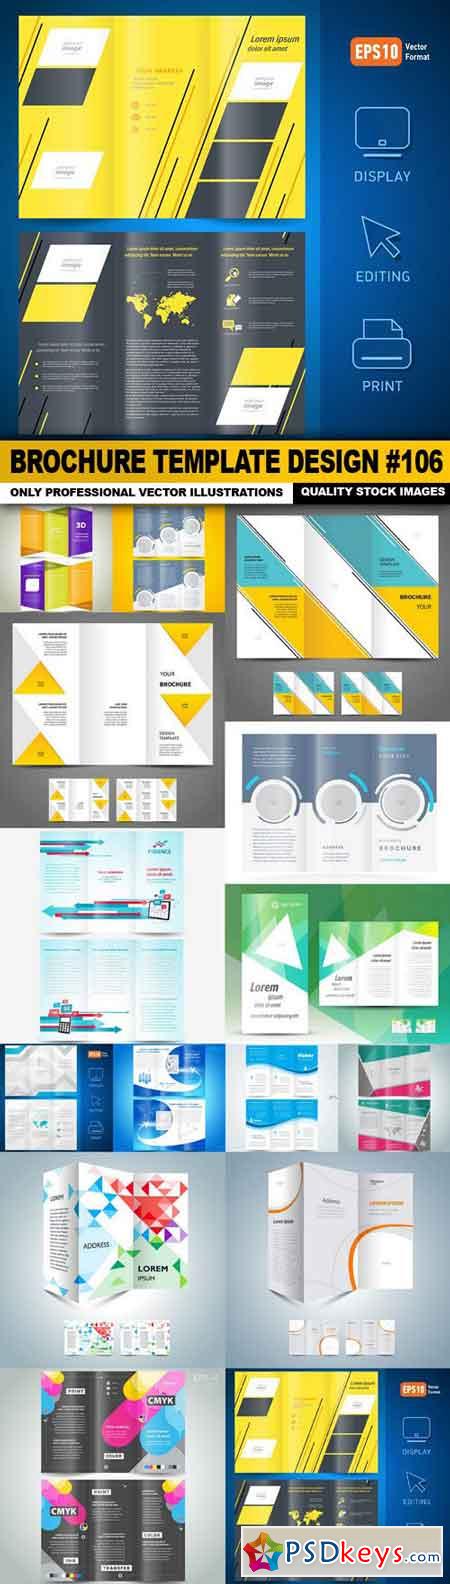 Brochure Template Design #106 - 15 Vector